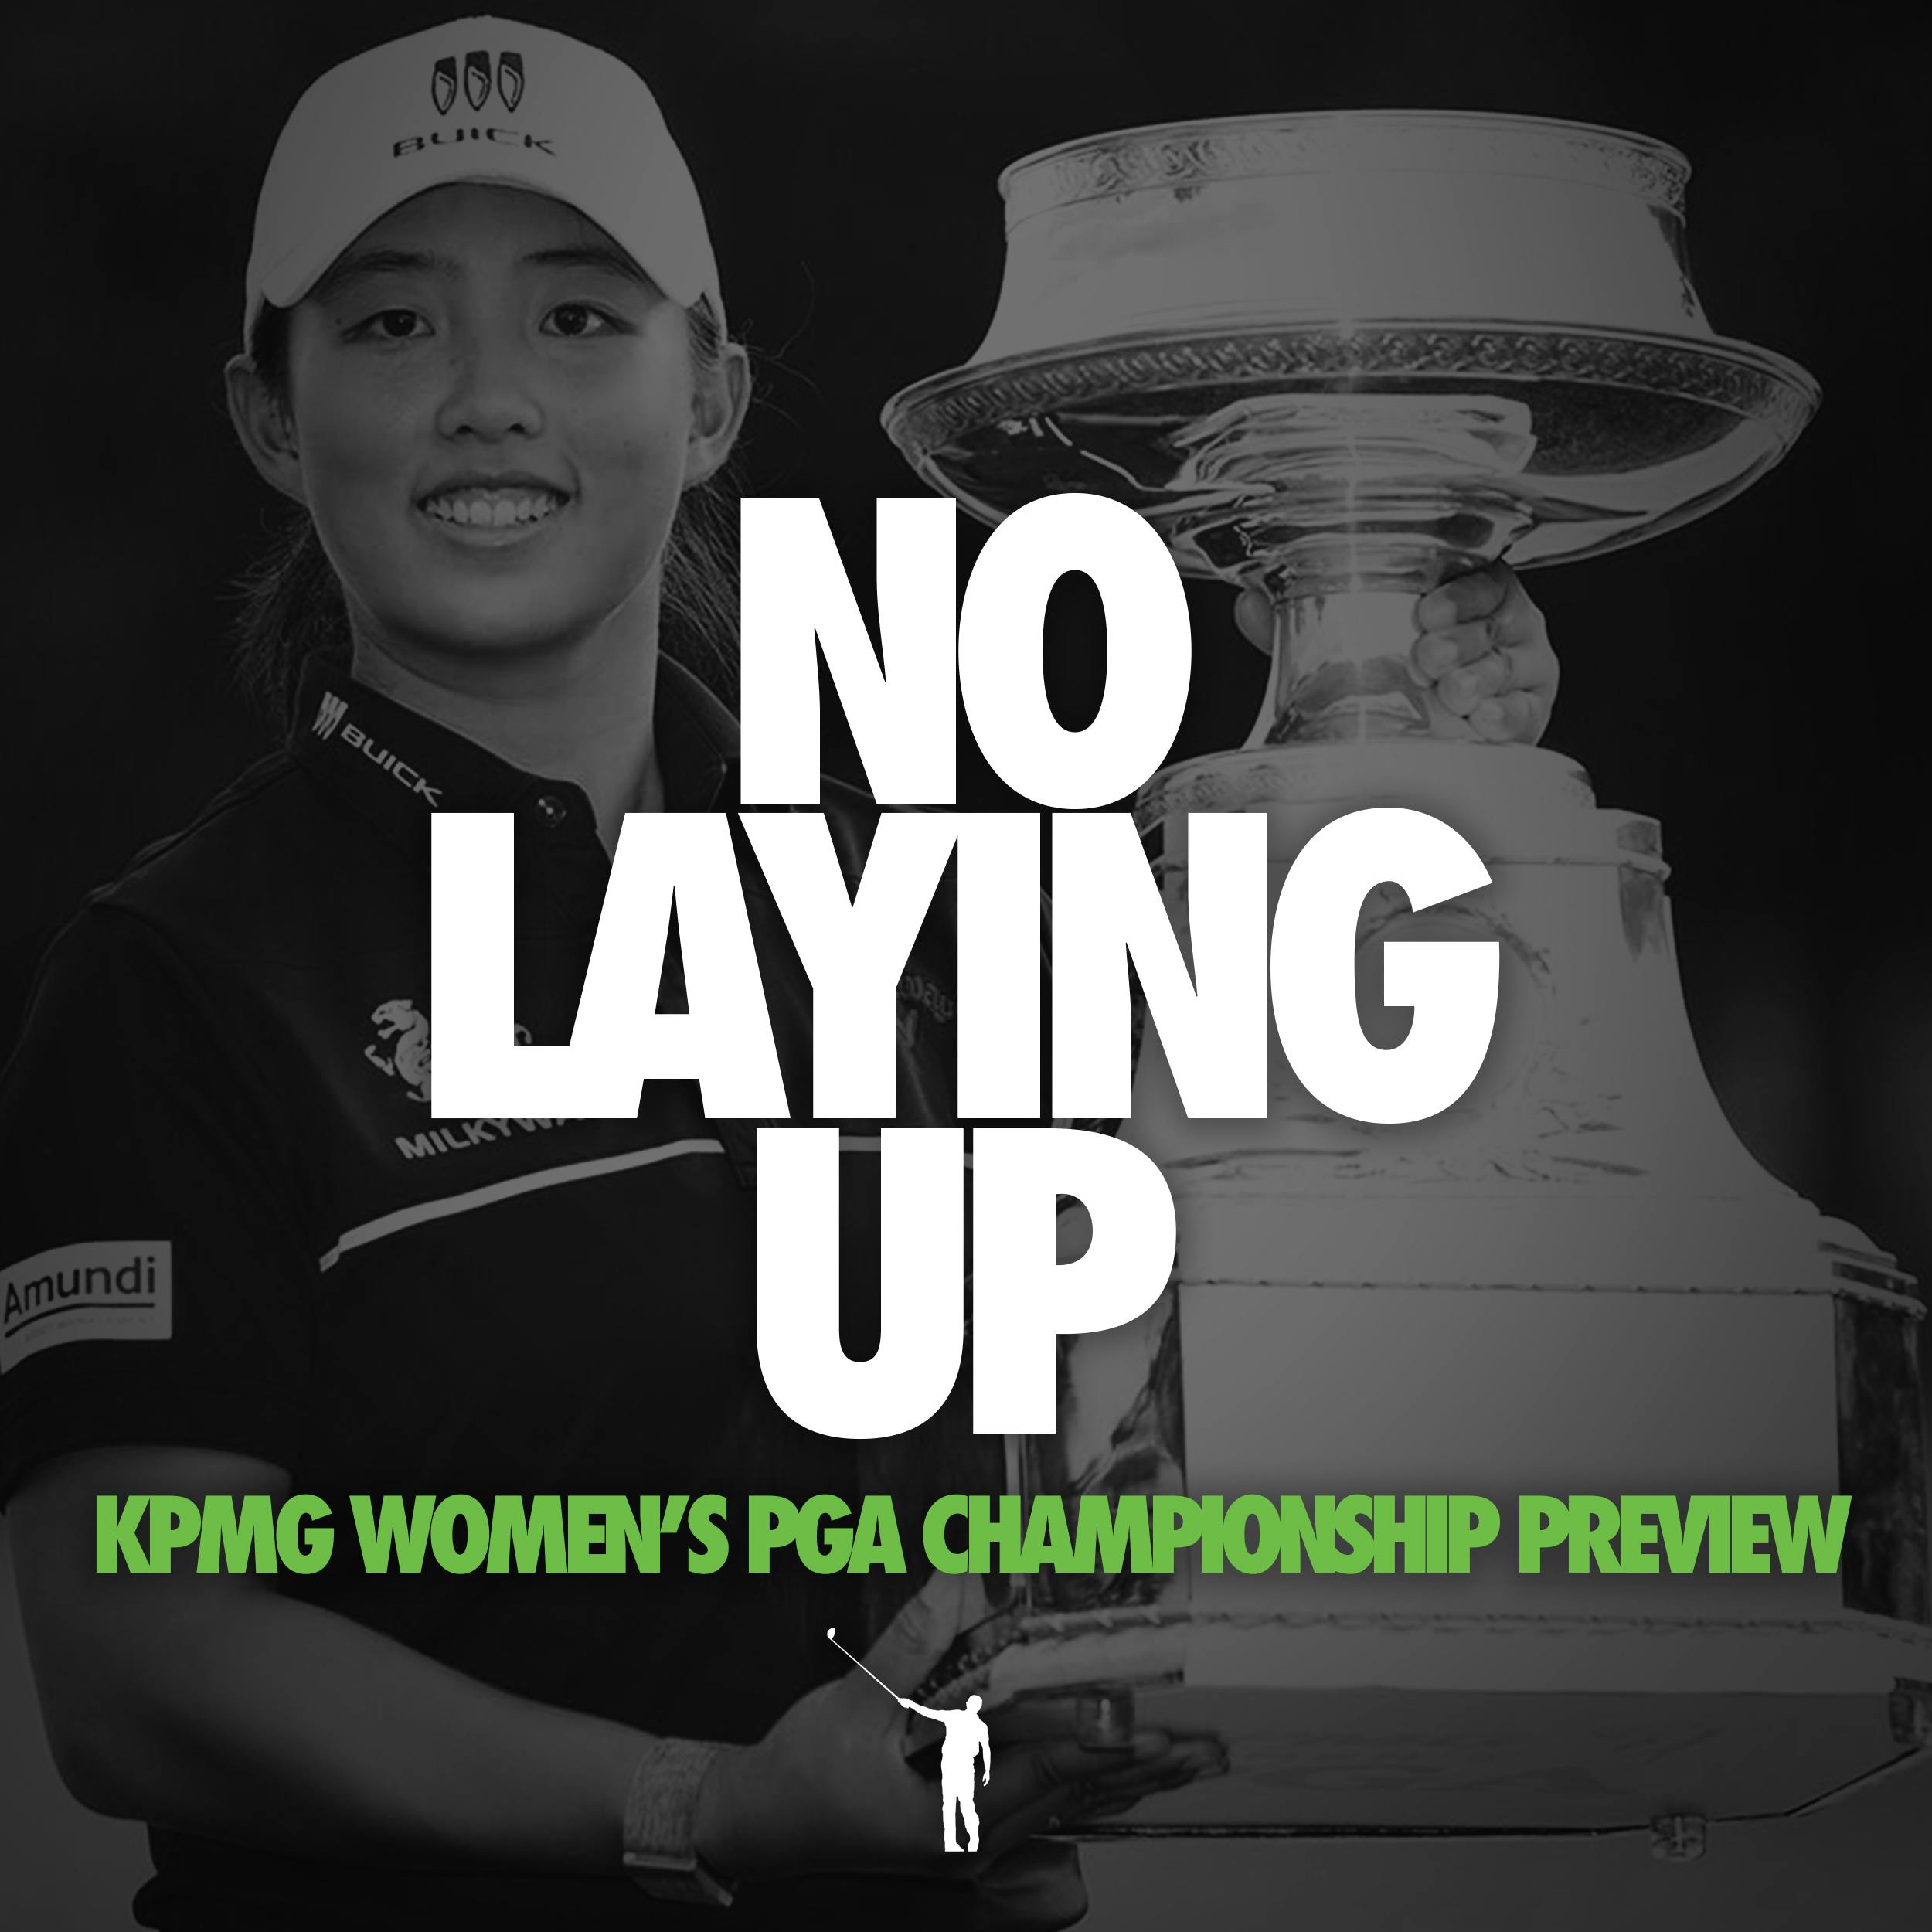 858 - KPMG Women's PGA Preview